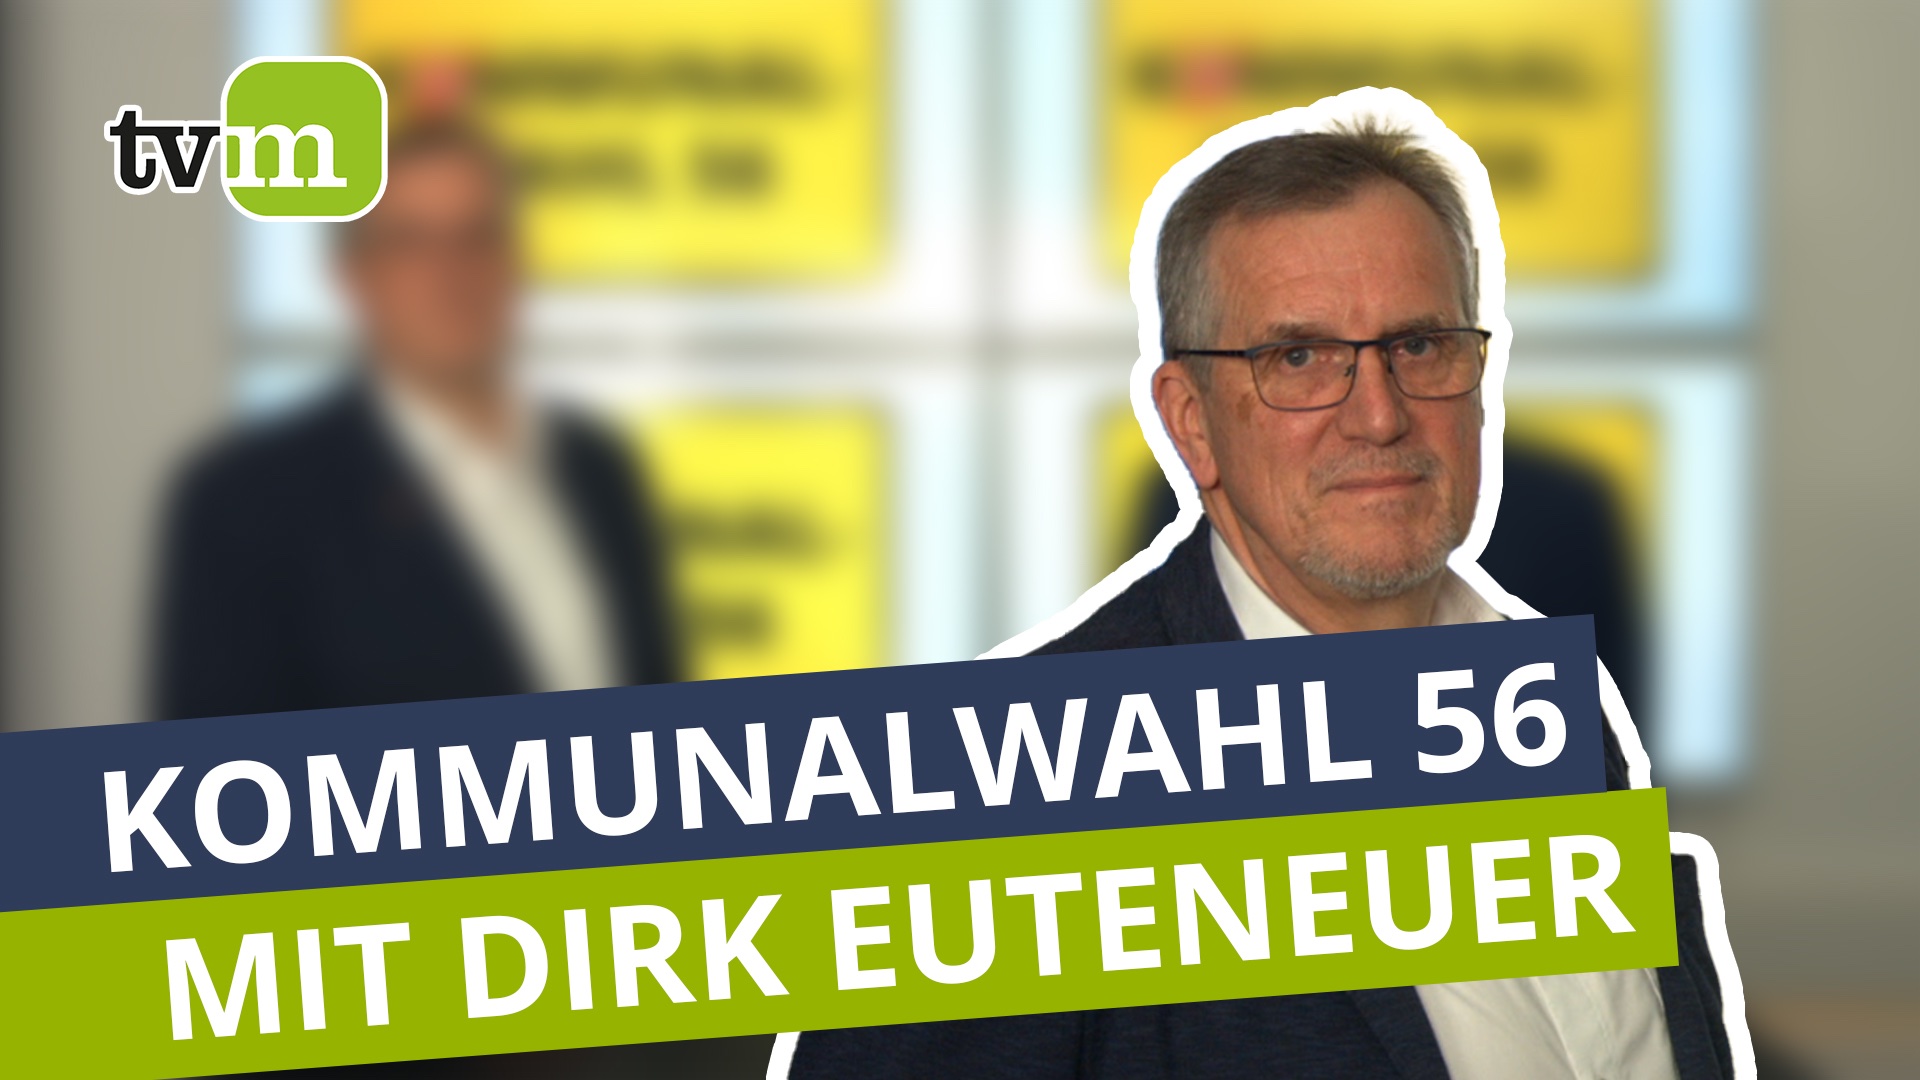 Kommunalwahl im Westerwald: Dirk Euteneuer der Freien Wähler Gruppe aus Altenkirchen-Flammersfeld